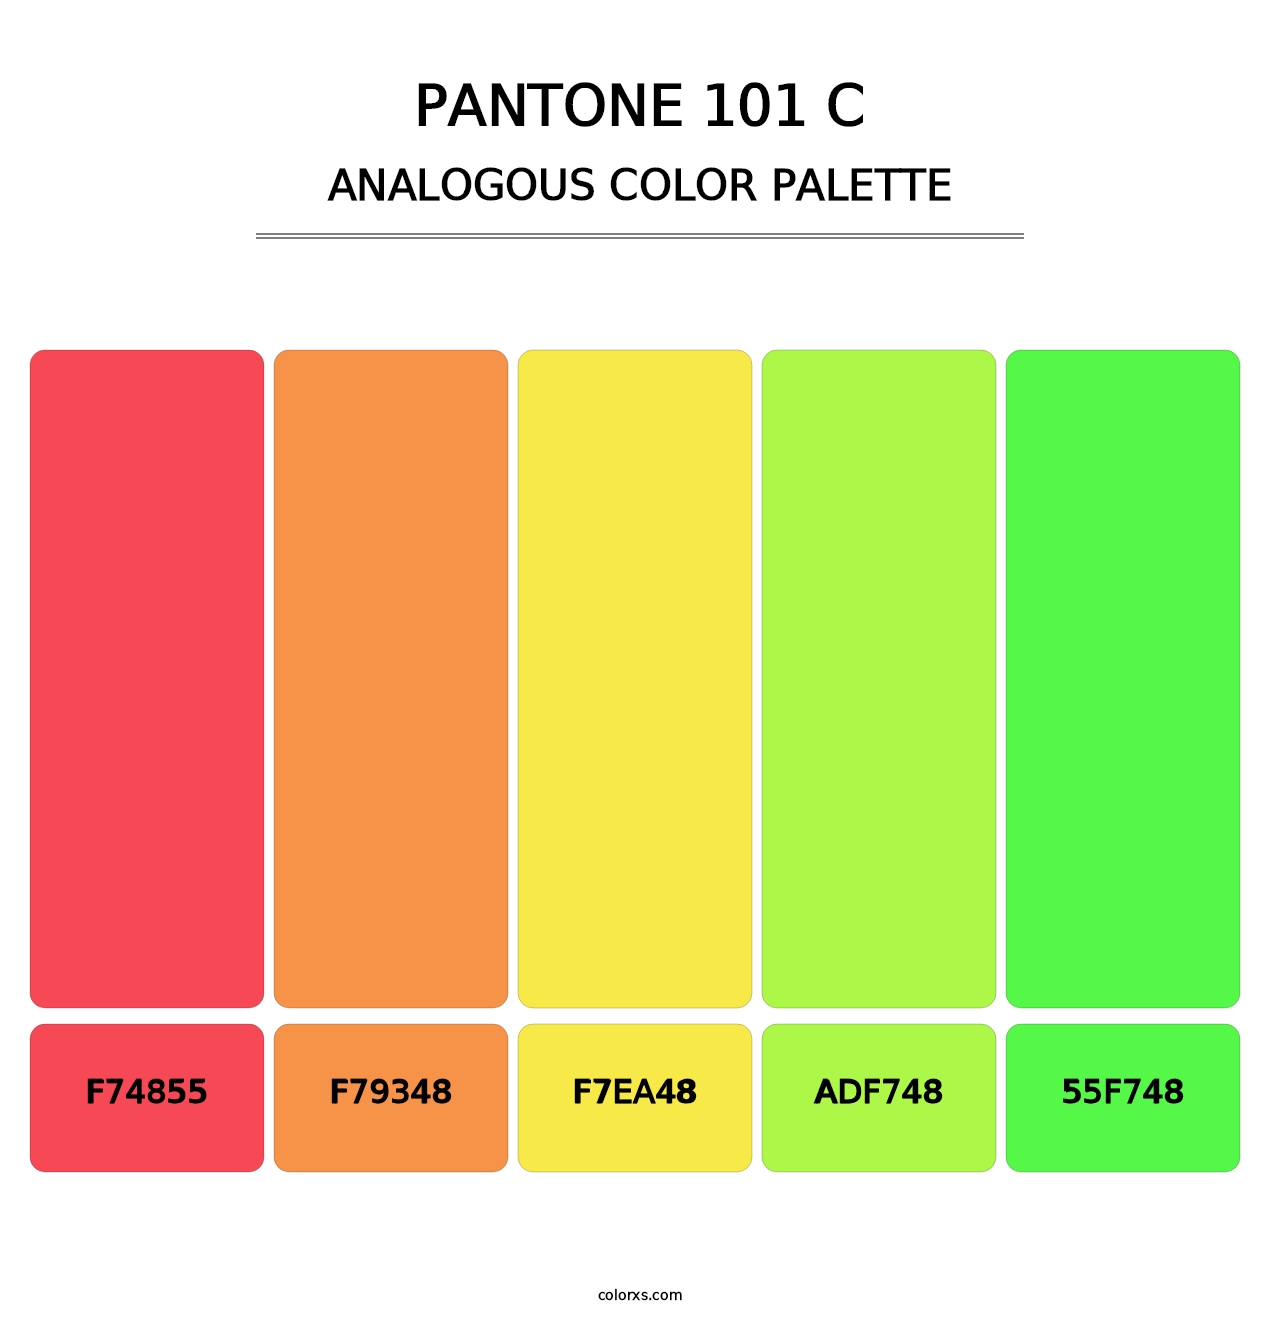 PANTONE 101 C - Analogous Color Palette